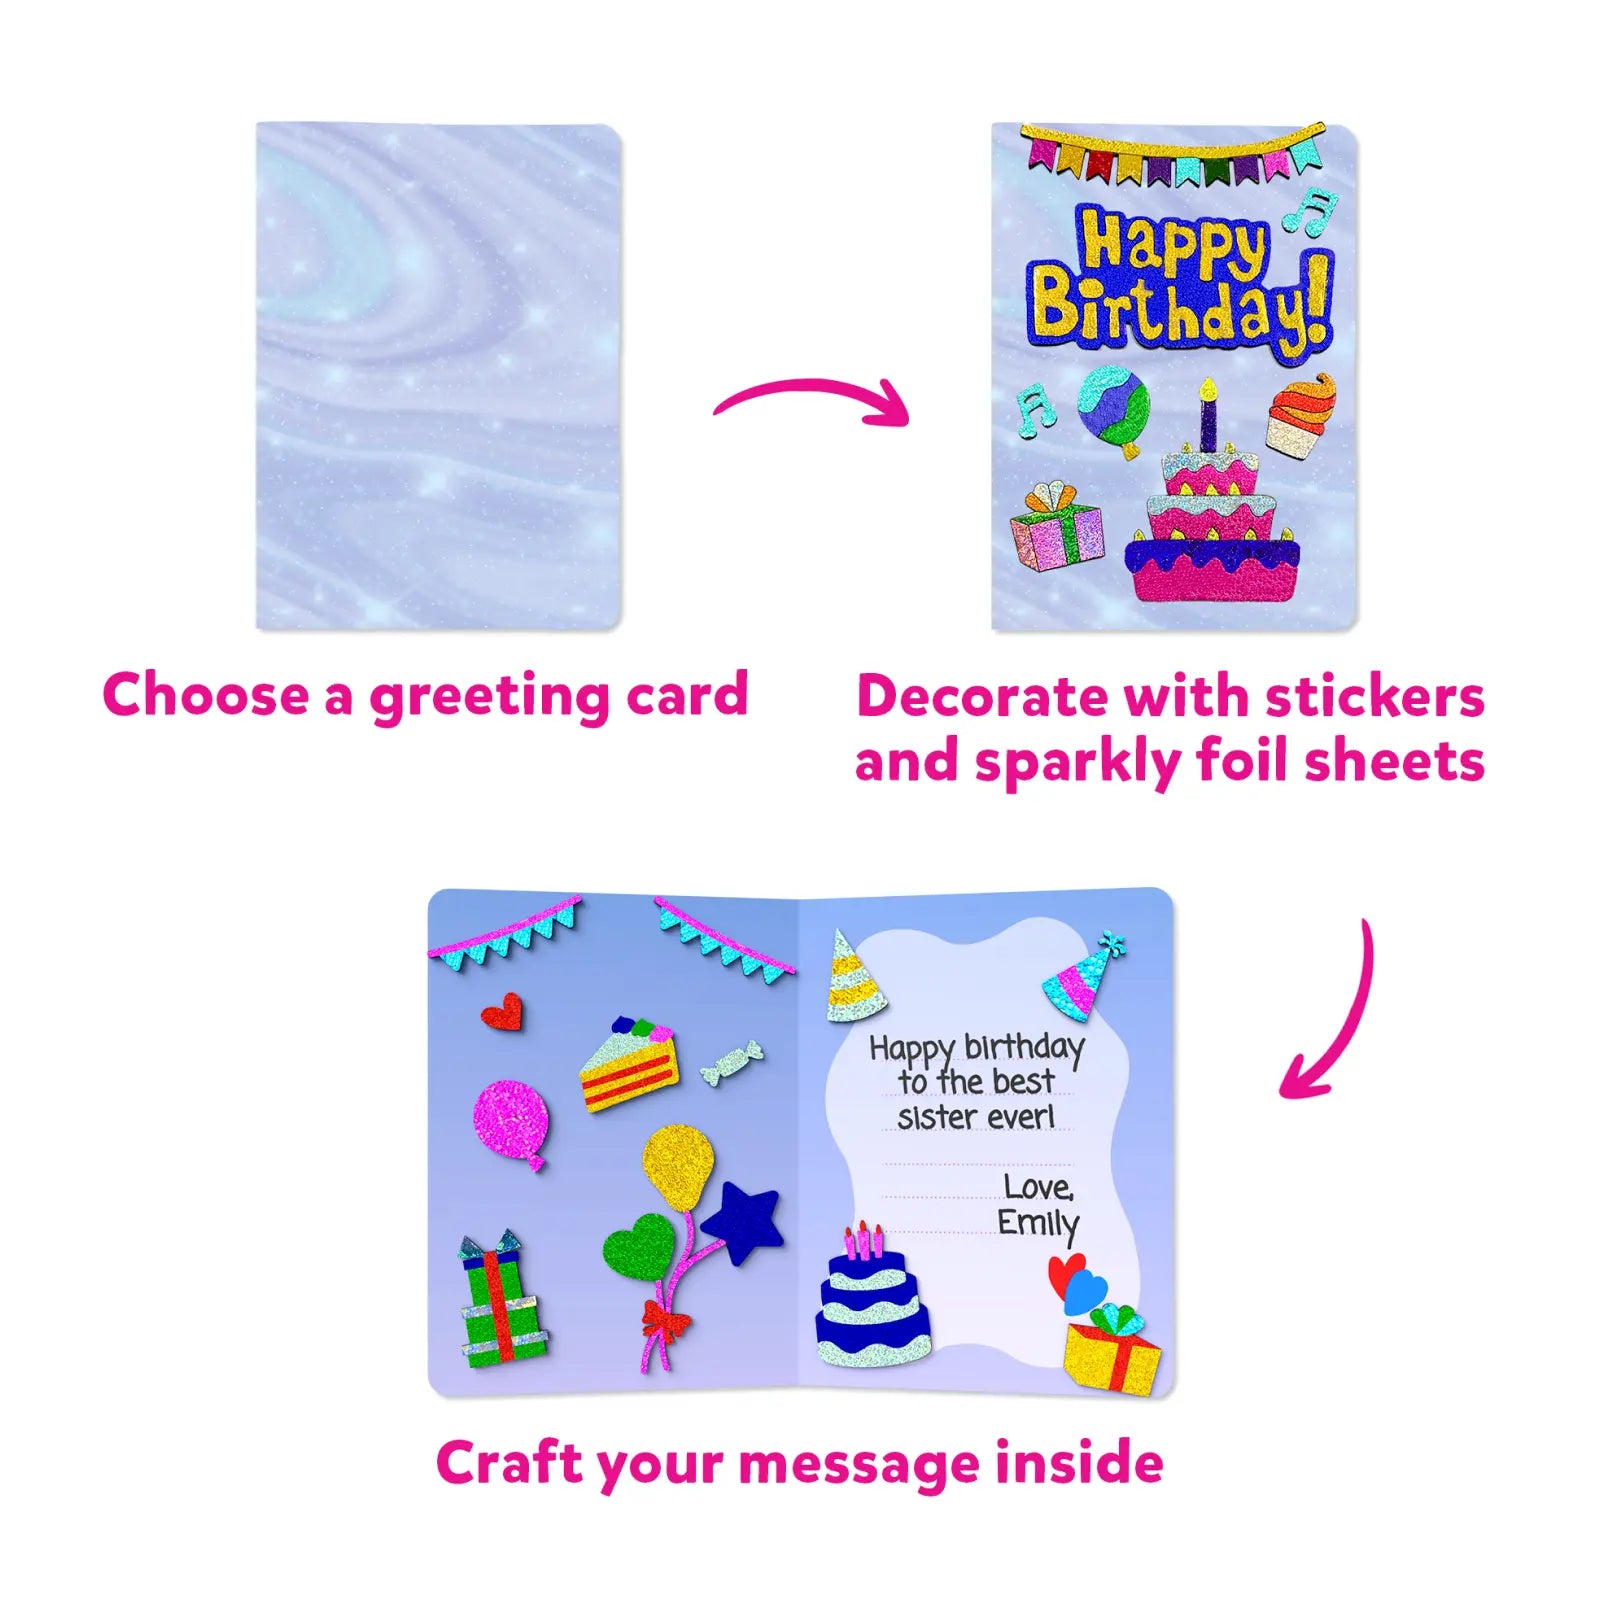 Foil Fun: Card Making Set | No Mess Art Kit (ages 4-9)